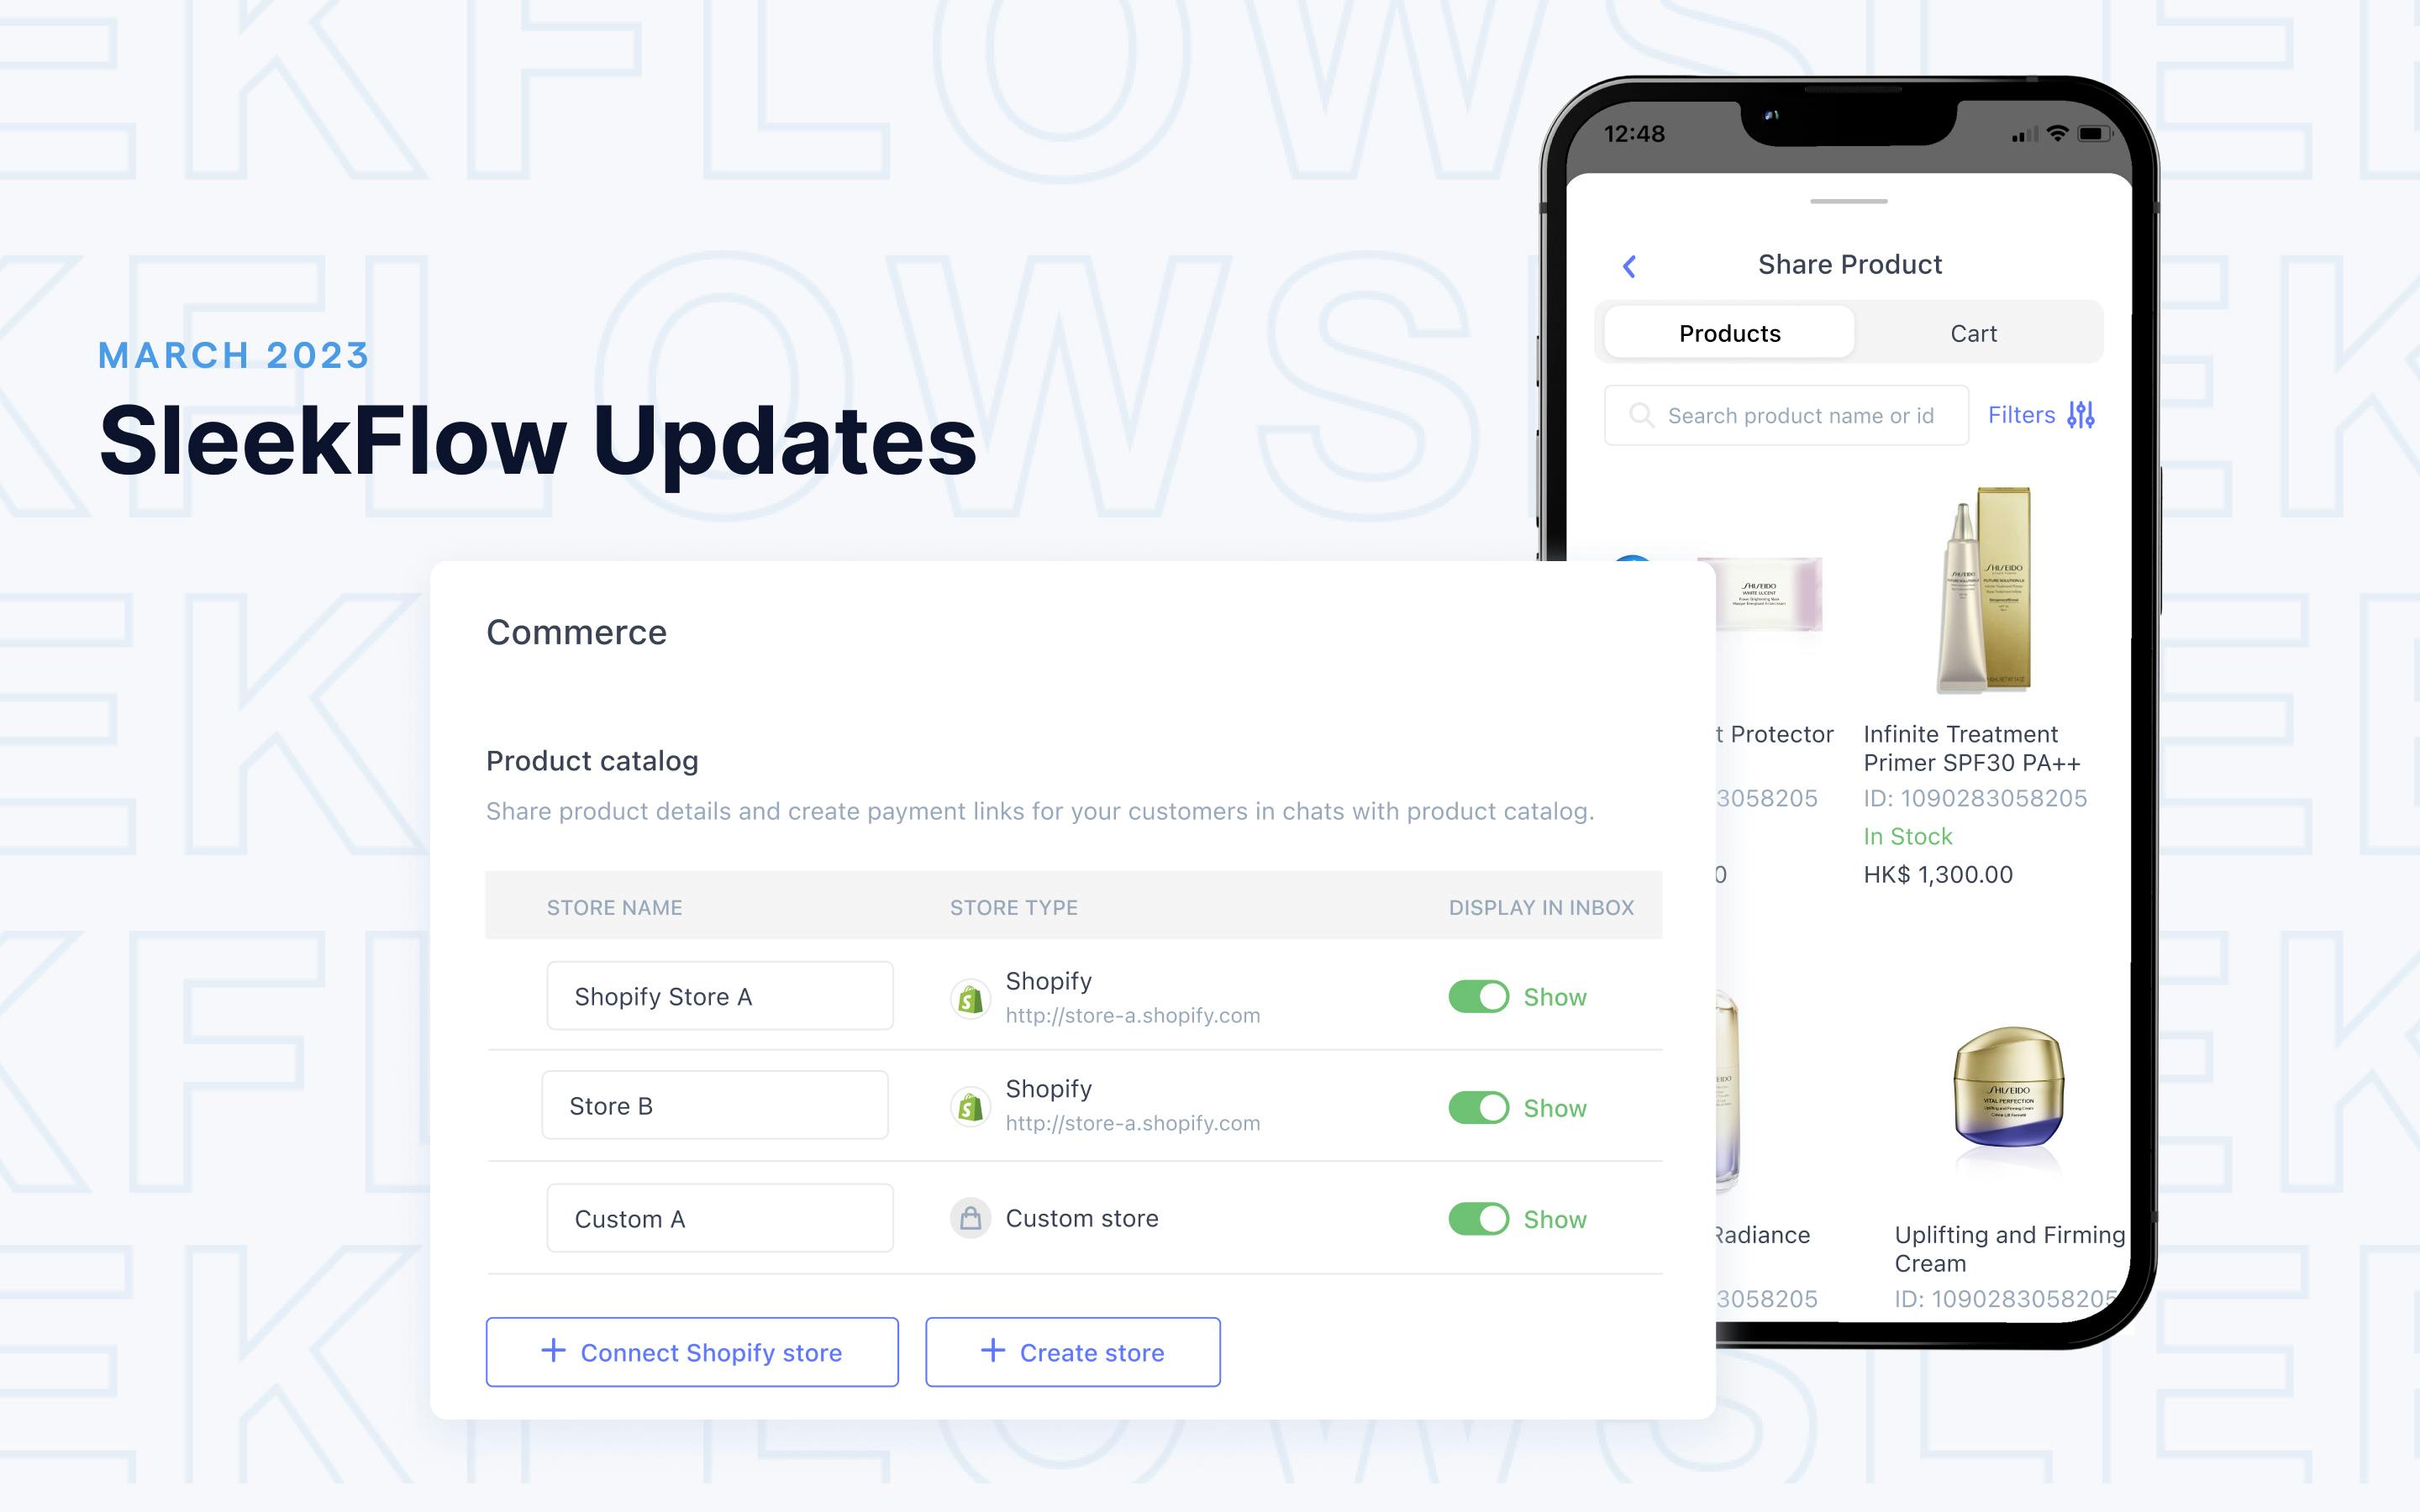 Terbaru di SleekFlow: Buat dan tampilkan katalog produk di aplikasi chatting dalam 5 menit